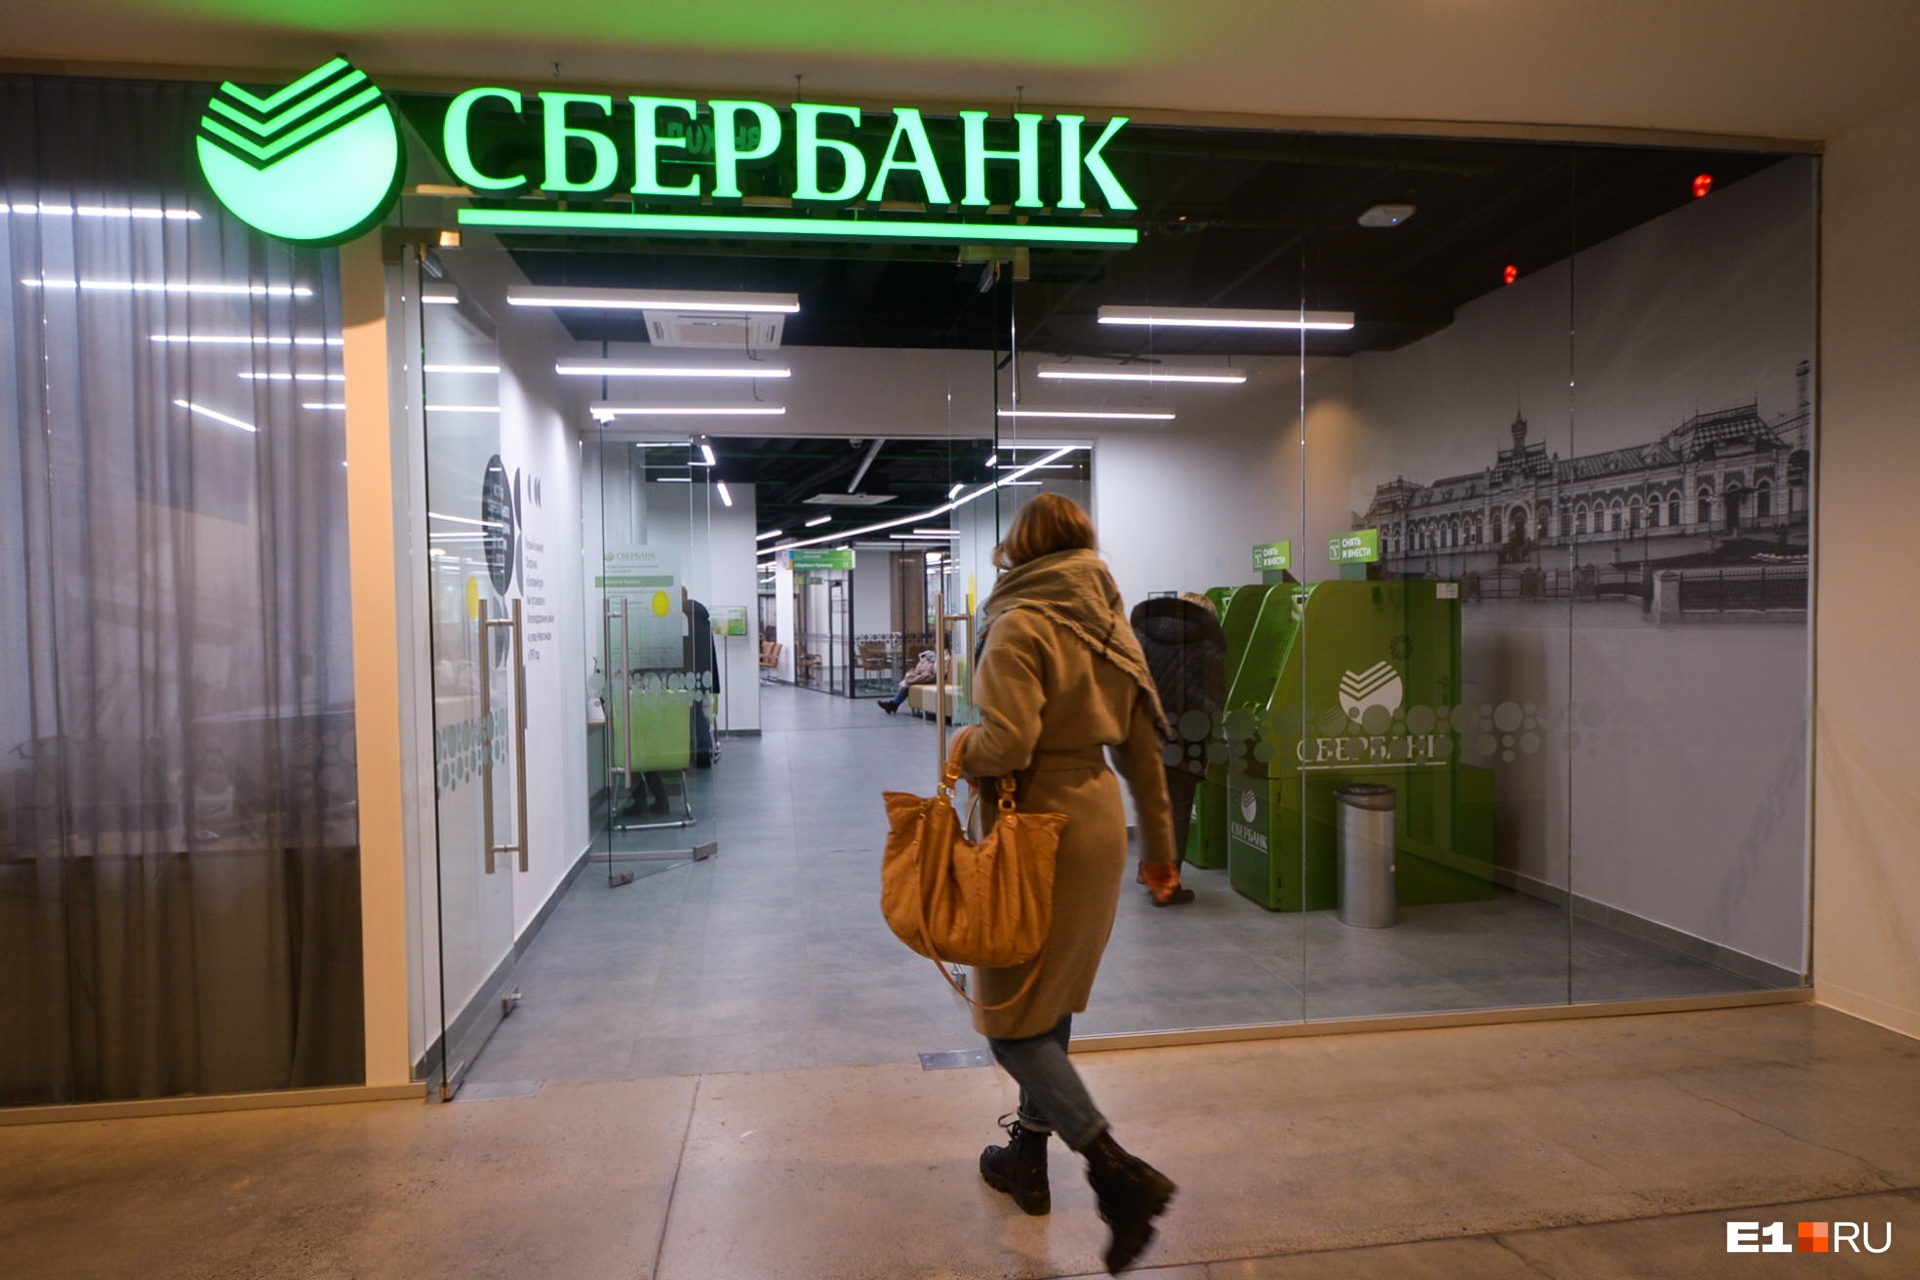 В Екатеринбурге грабители напали на отделение Сбербанка. Они пытались взорвать банкомат